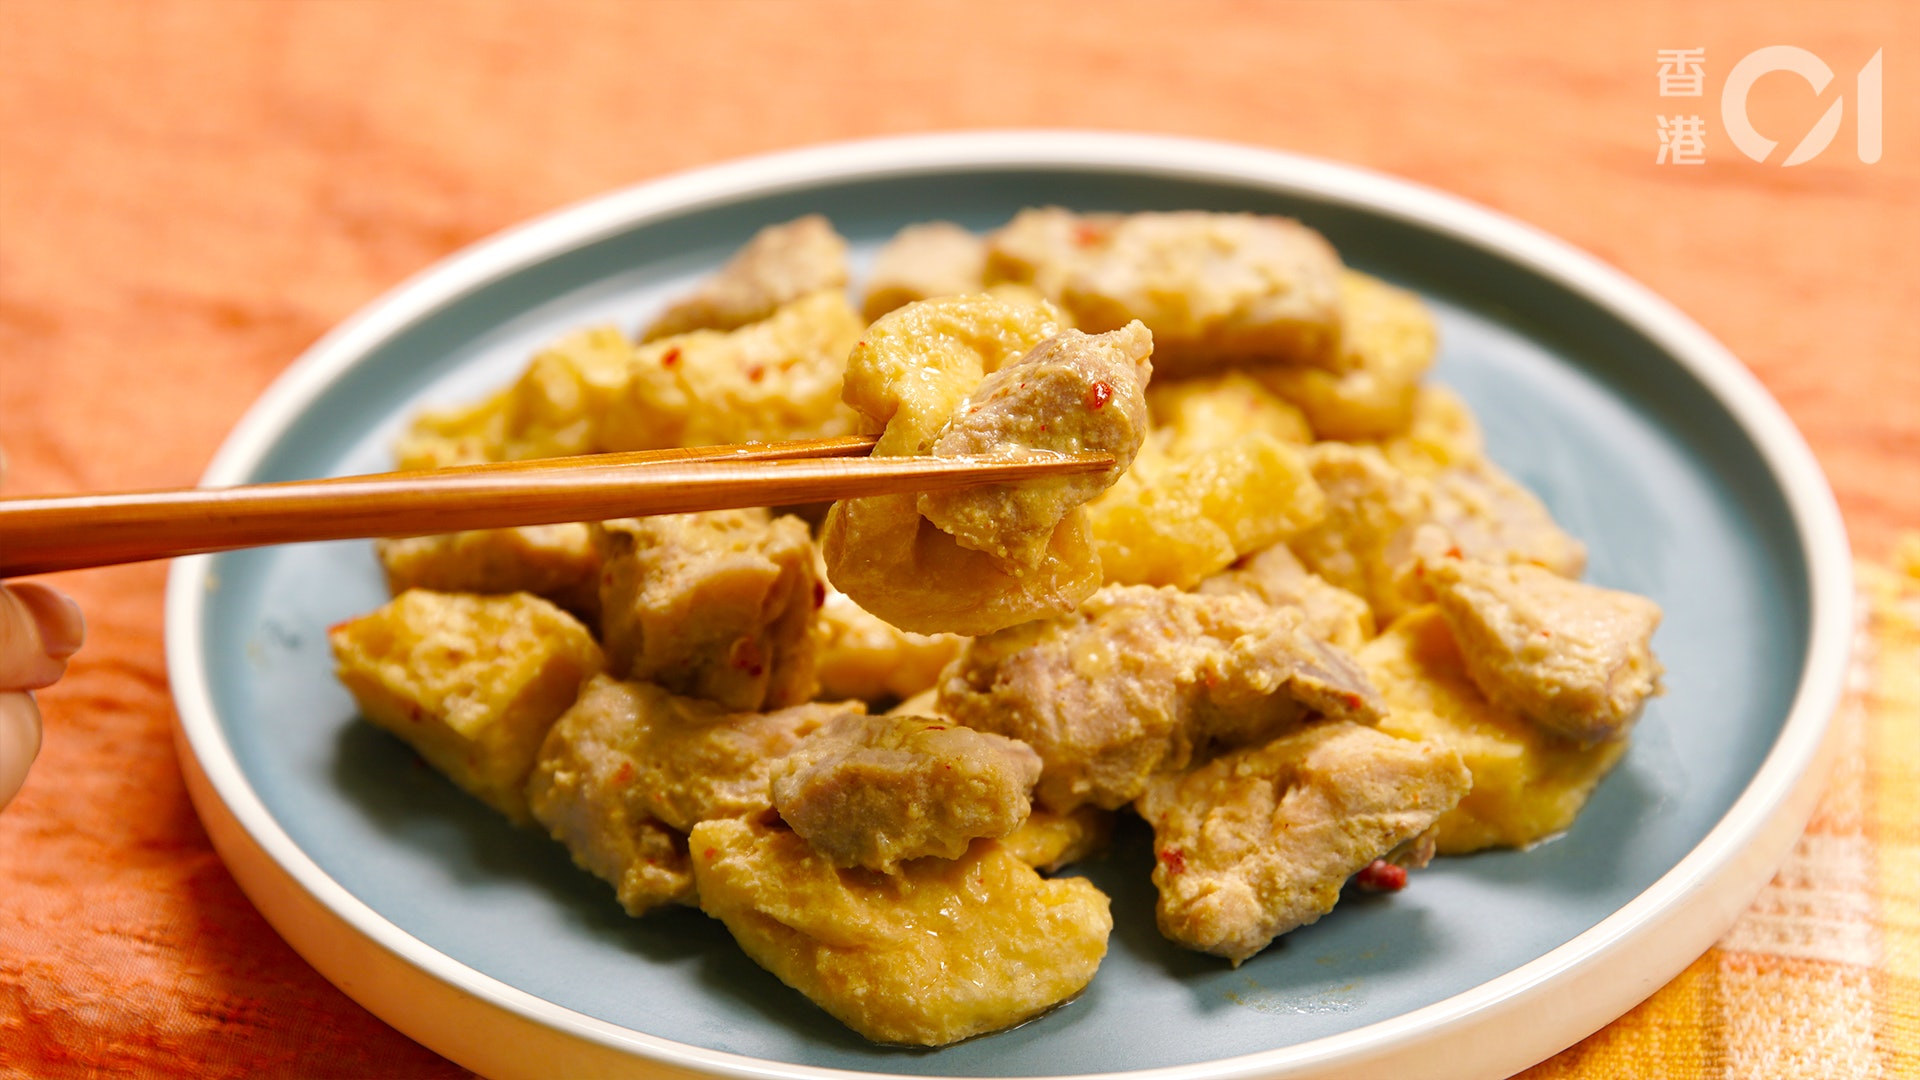 腐乳蒸排骨是很適合佐飯的家常菜。